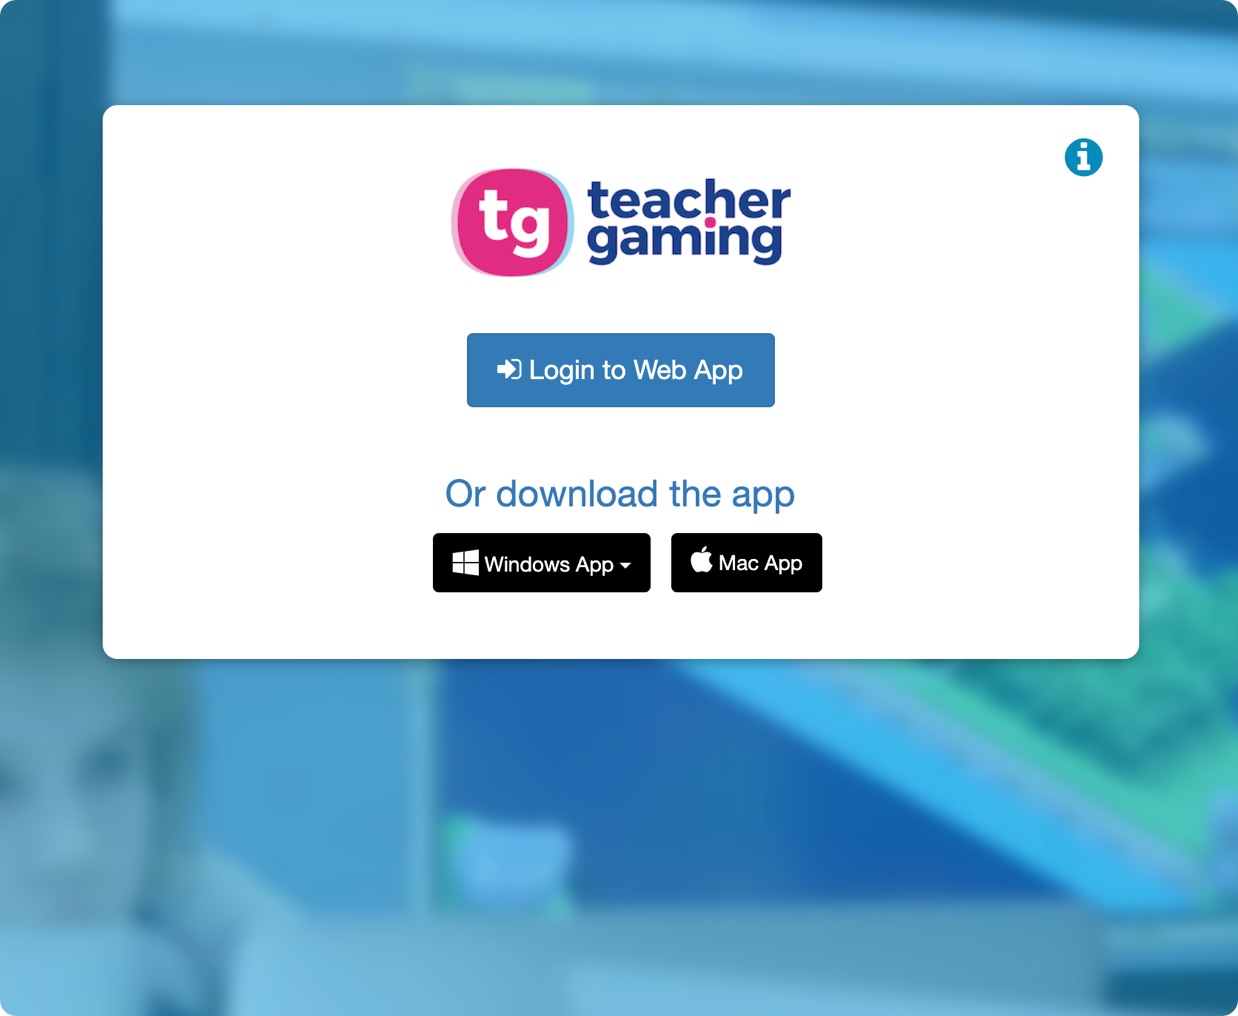 TeacherGaming App Cover Image